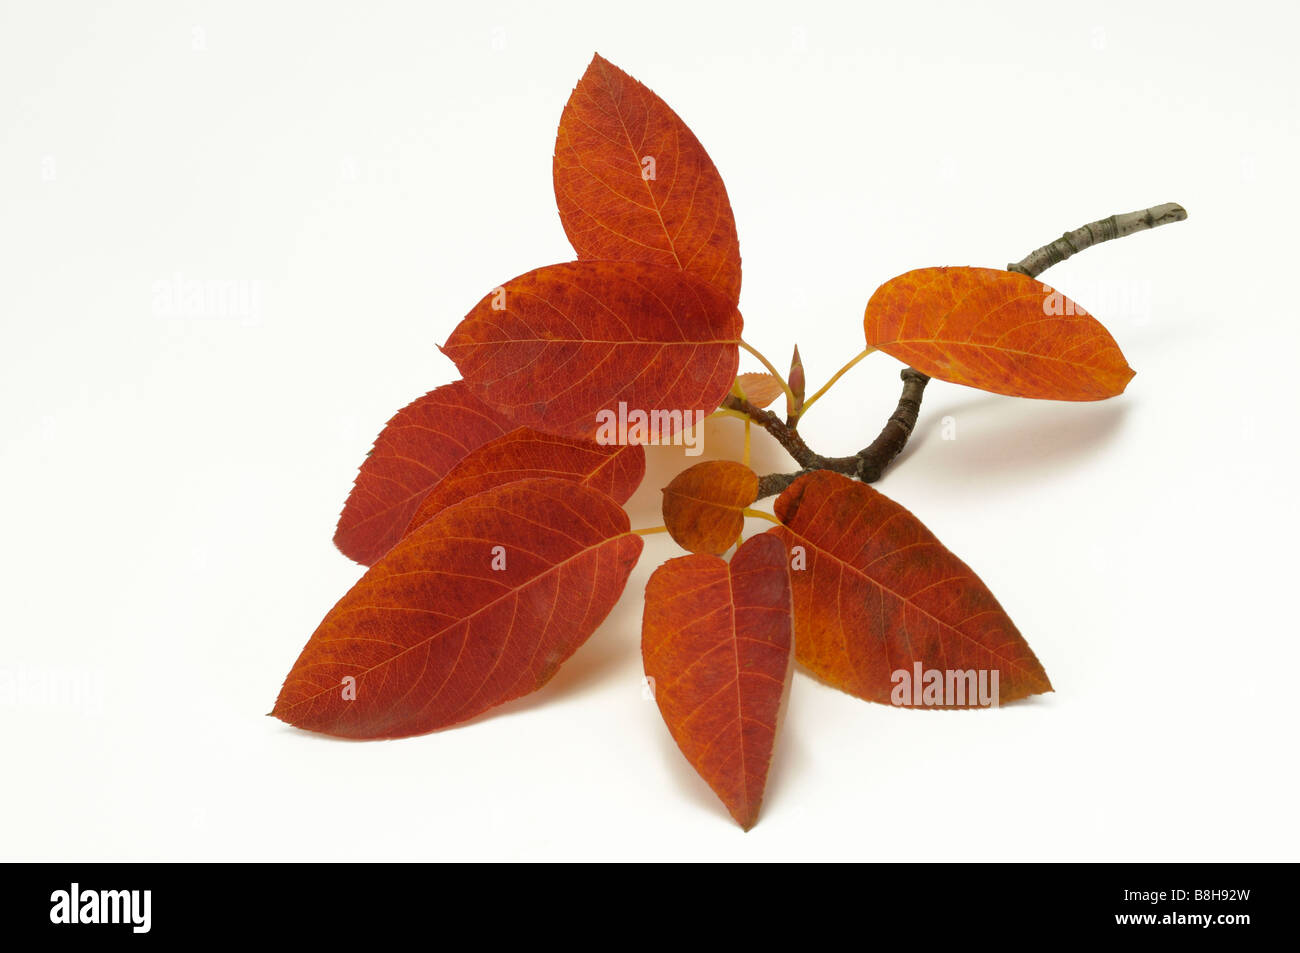 L'amélanchier, lisse Shadbush Allegheny (Amelanchier laevis), branche avec des feuilles en couleurs de l'automne, studio photo Banque D'Images